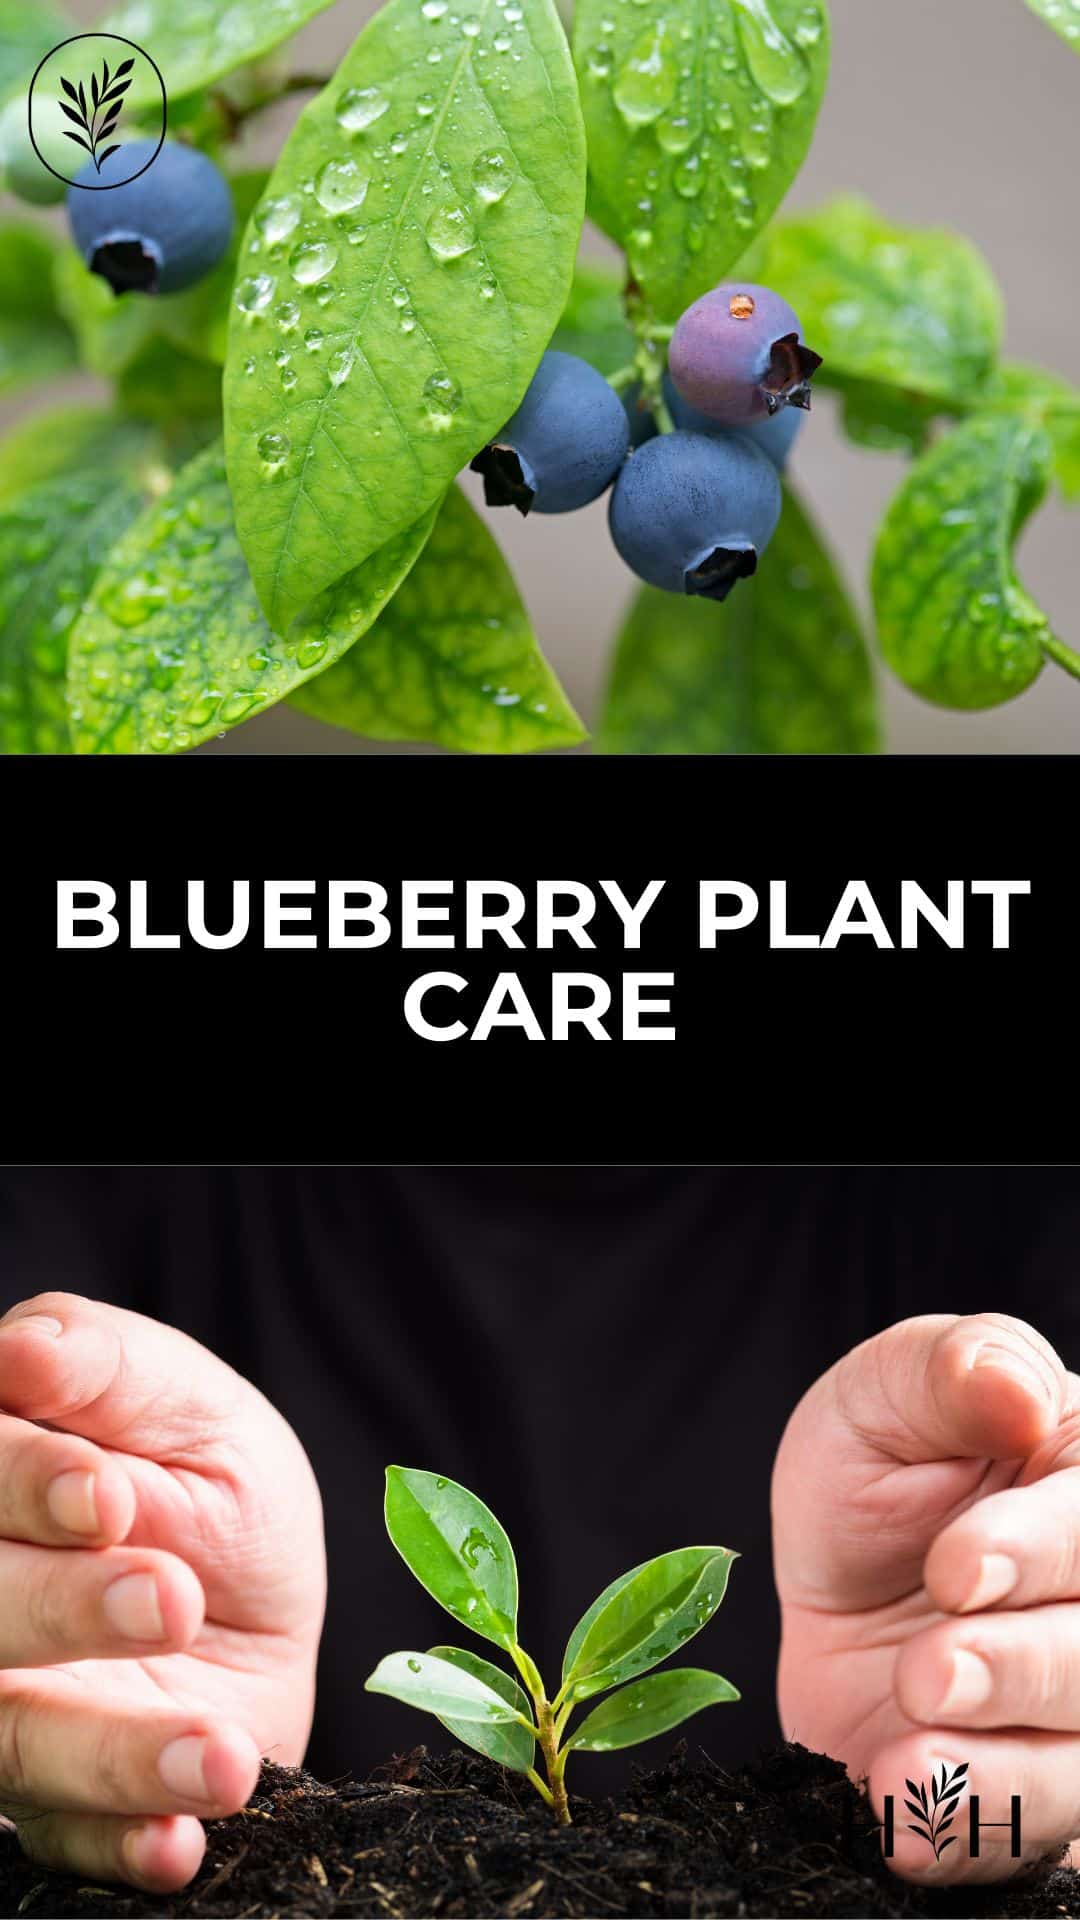 Blueberry plant care via @home4theharvest